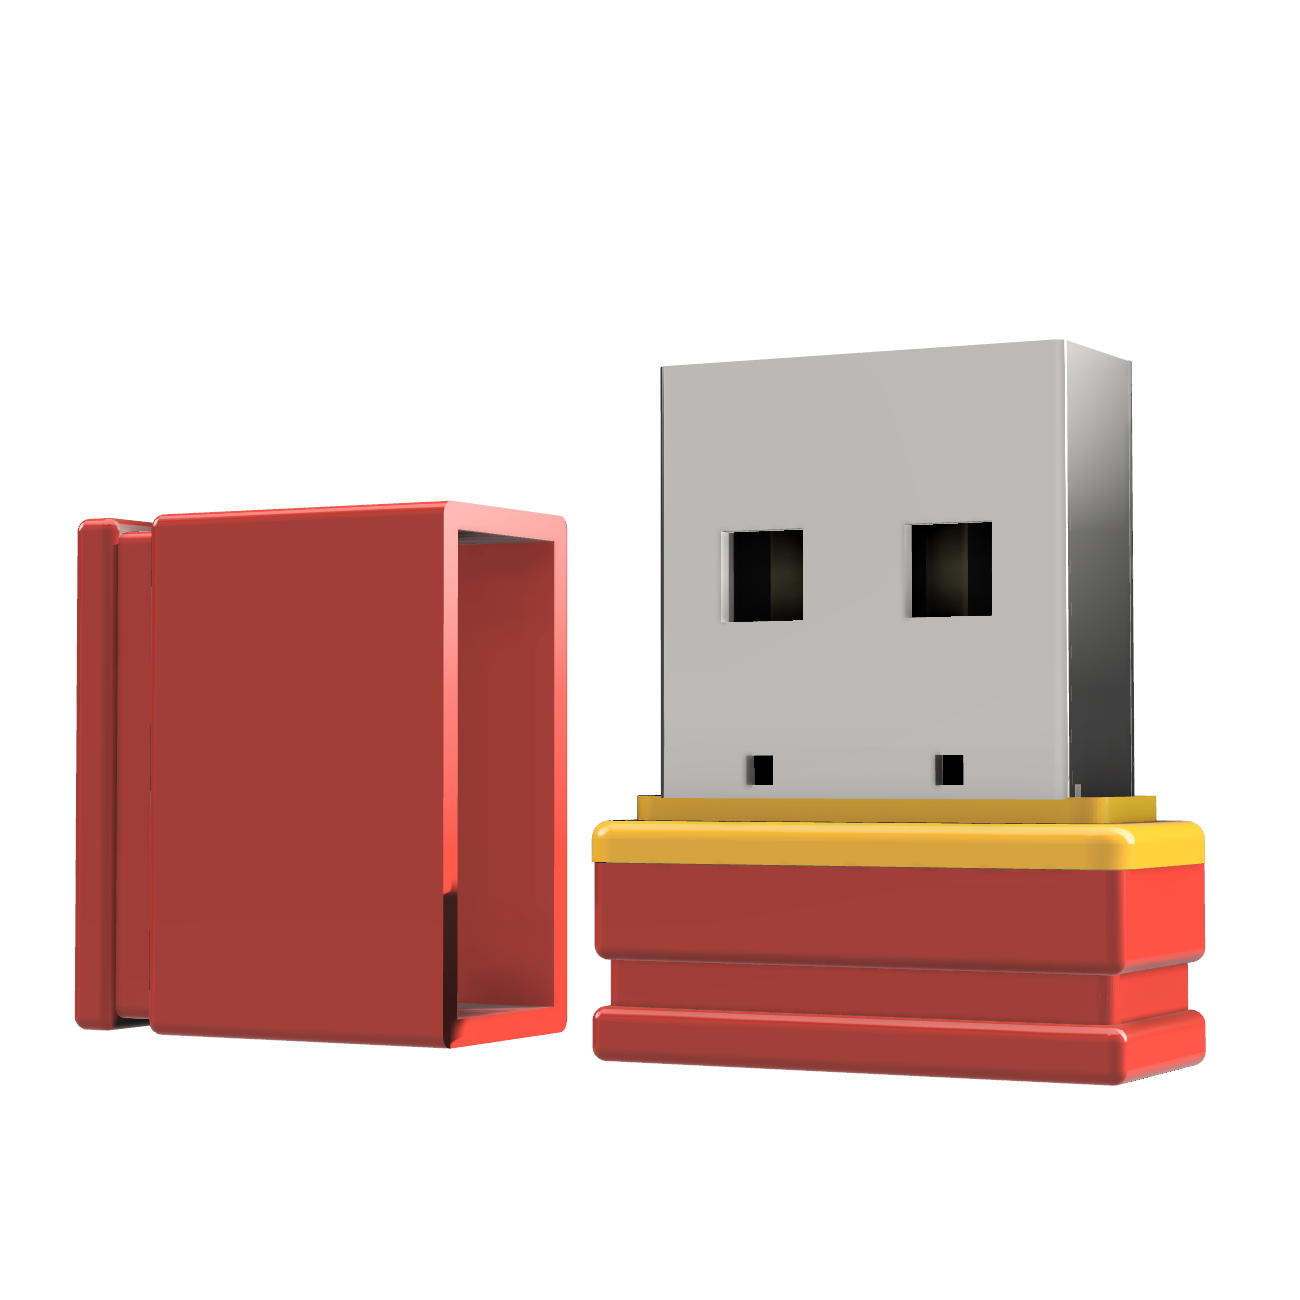 ®ULTRA P1 USB-Stick 1 GB) (Rot/Gelb, USB GERMANY Mini